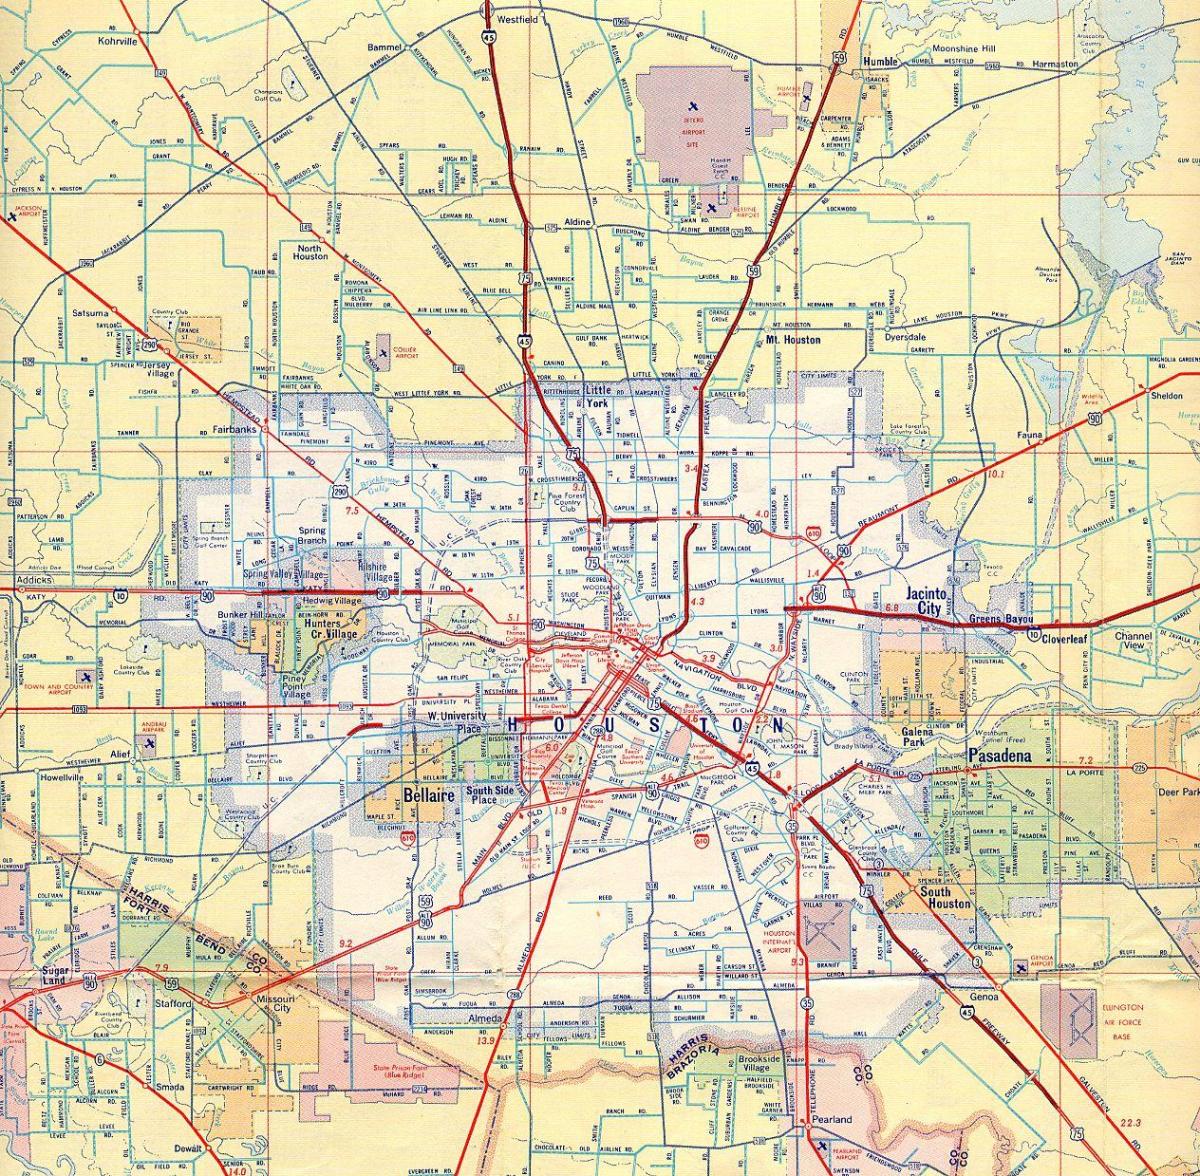 Karte von Houston Autobahnen